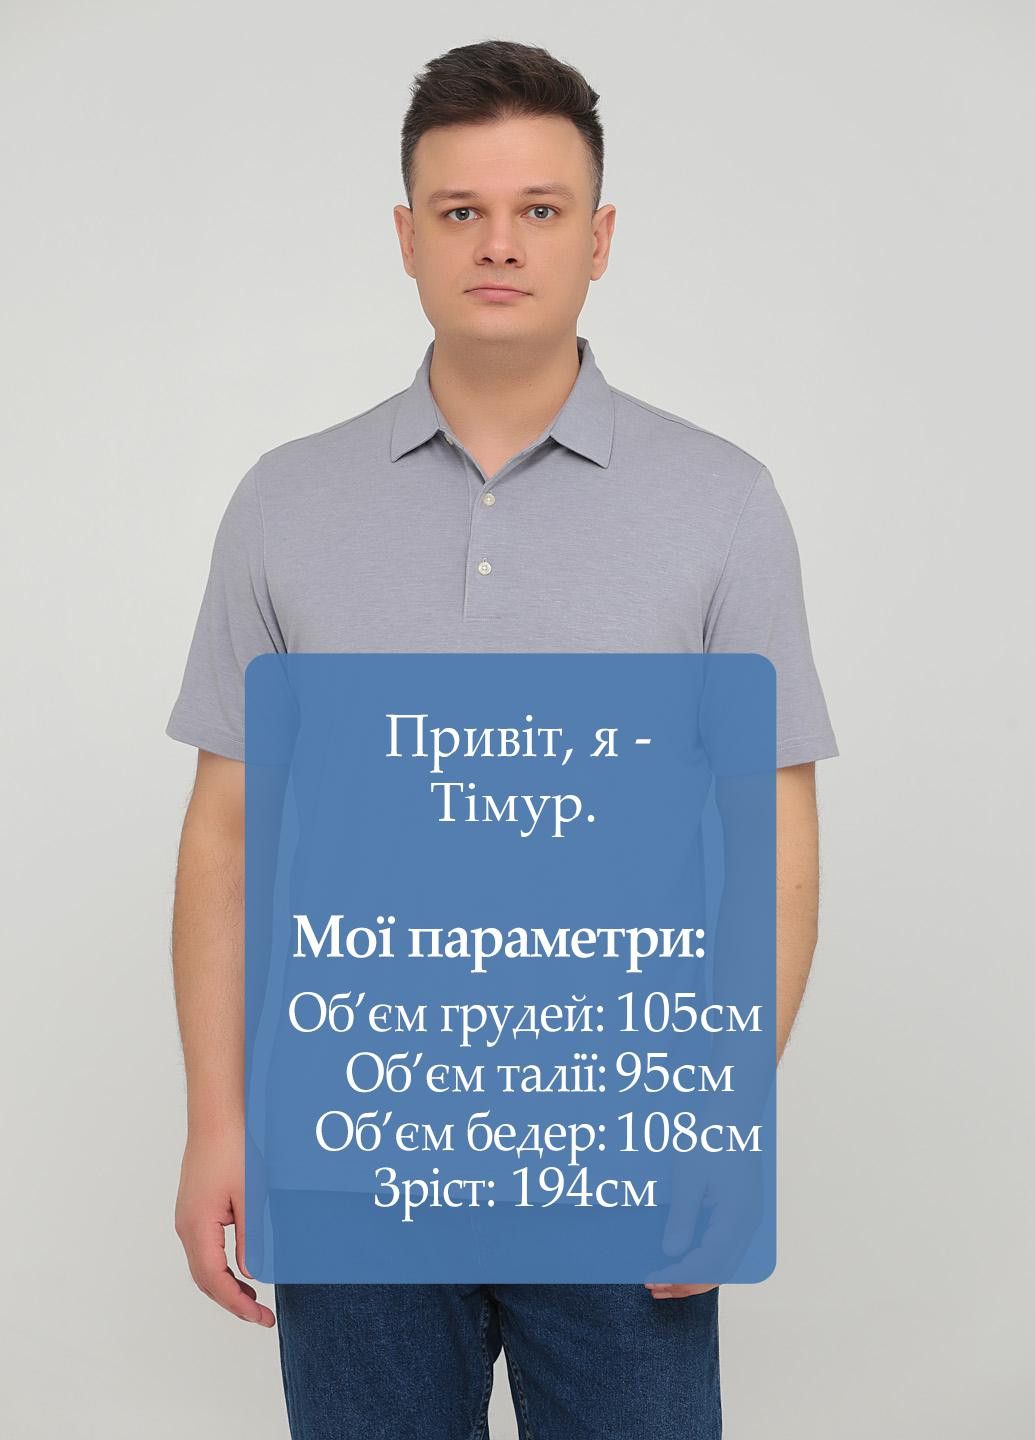 Серая футболка-поло для мужчин Greg Norman меланжевая